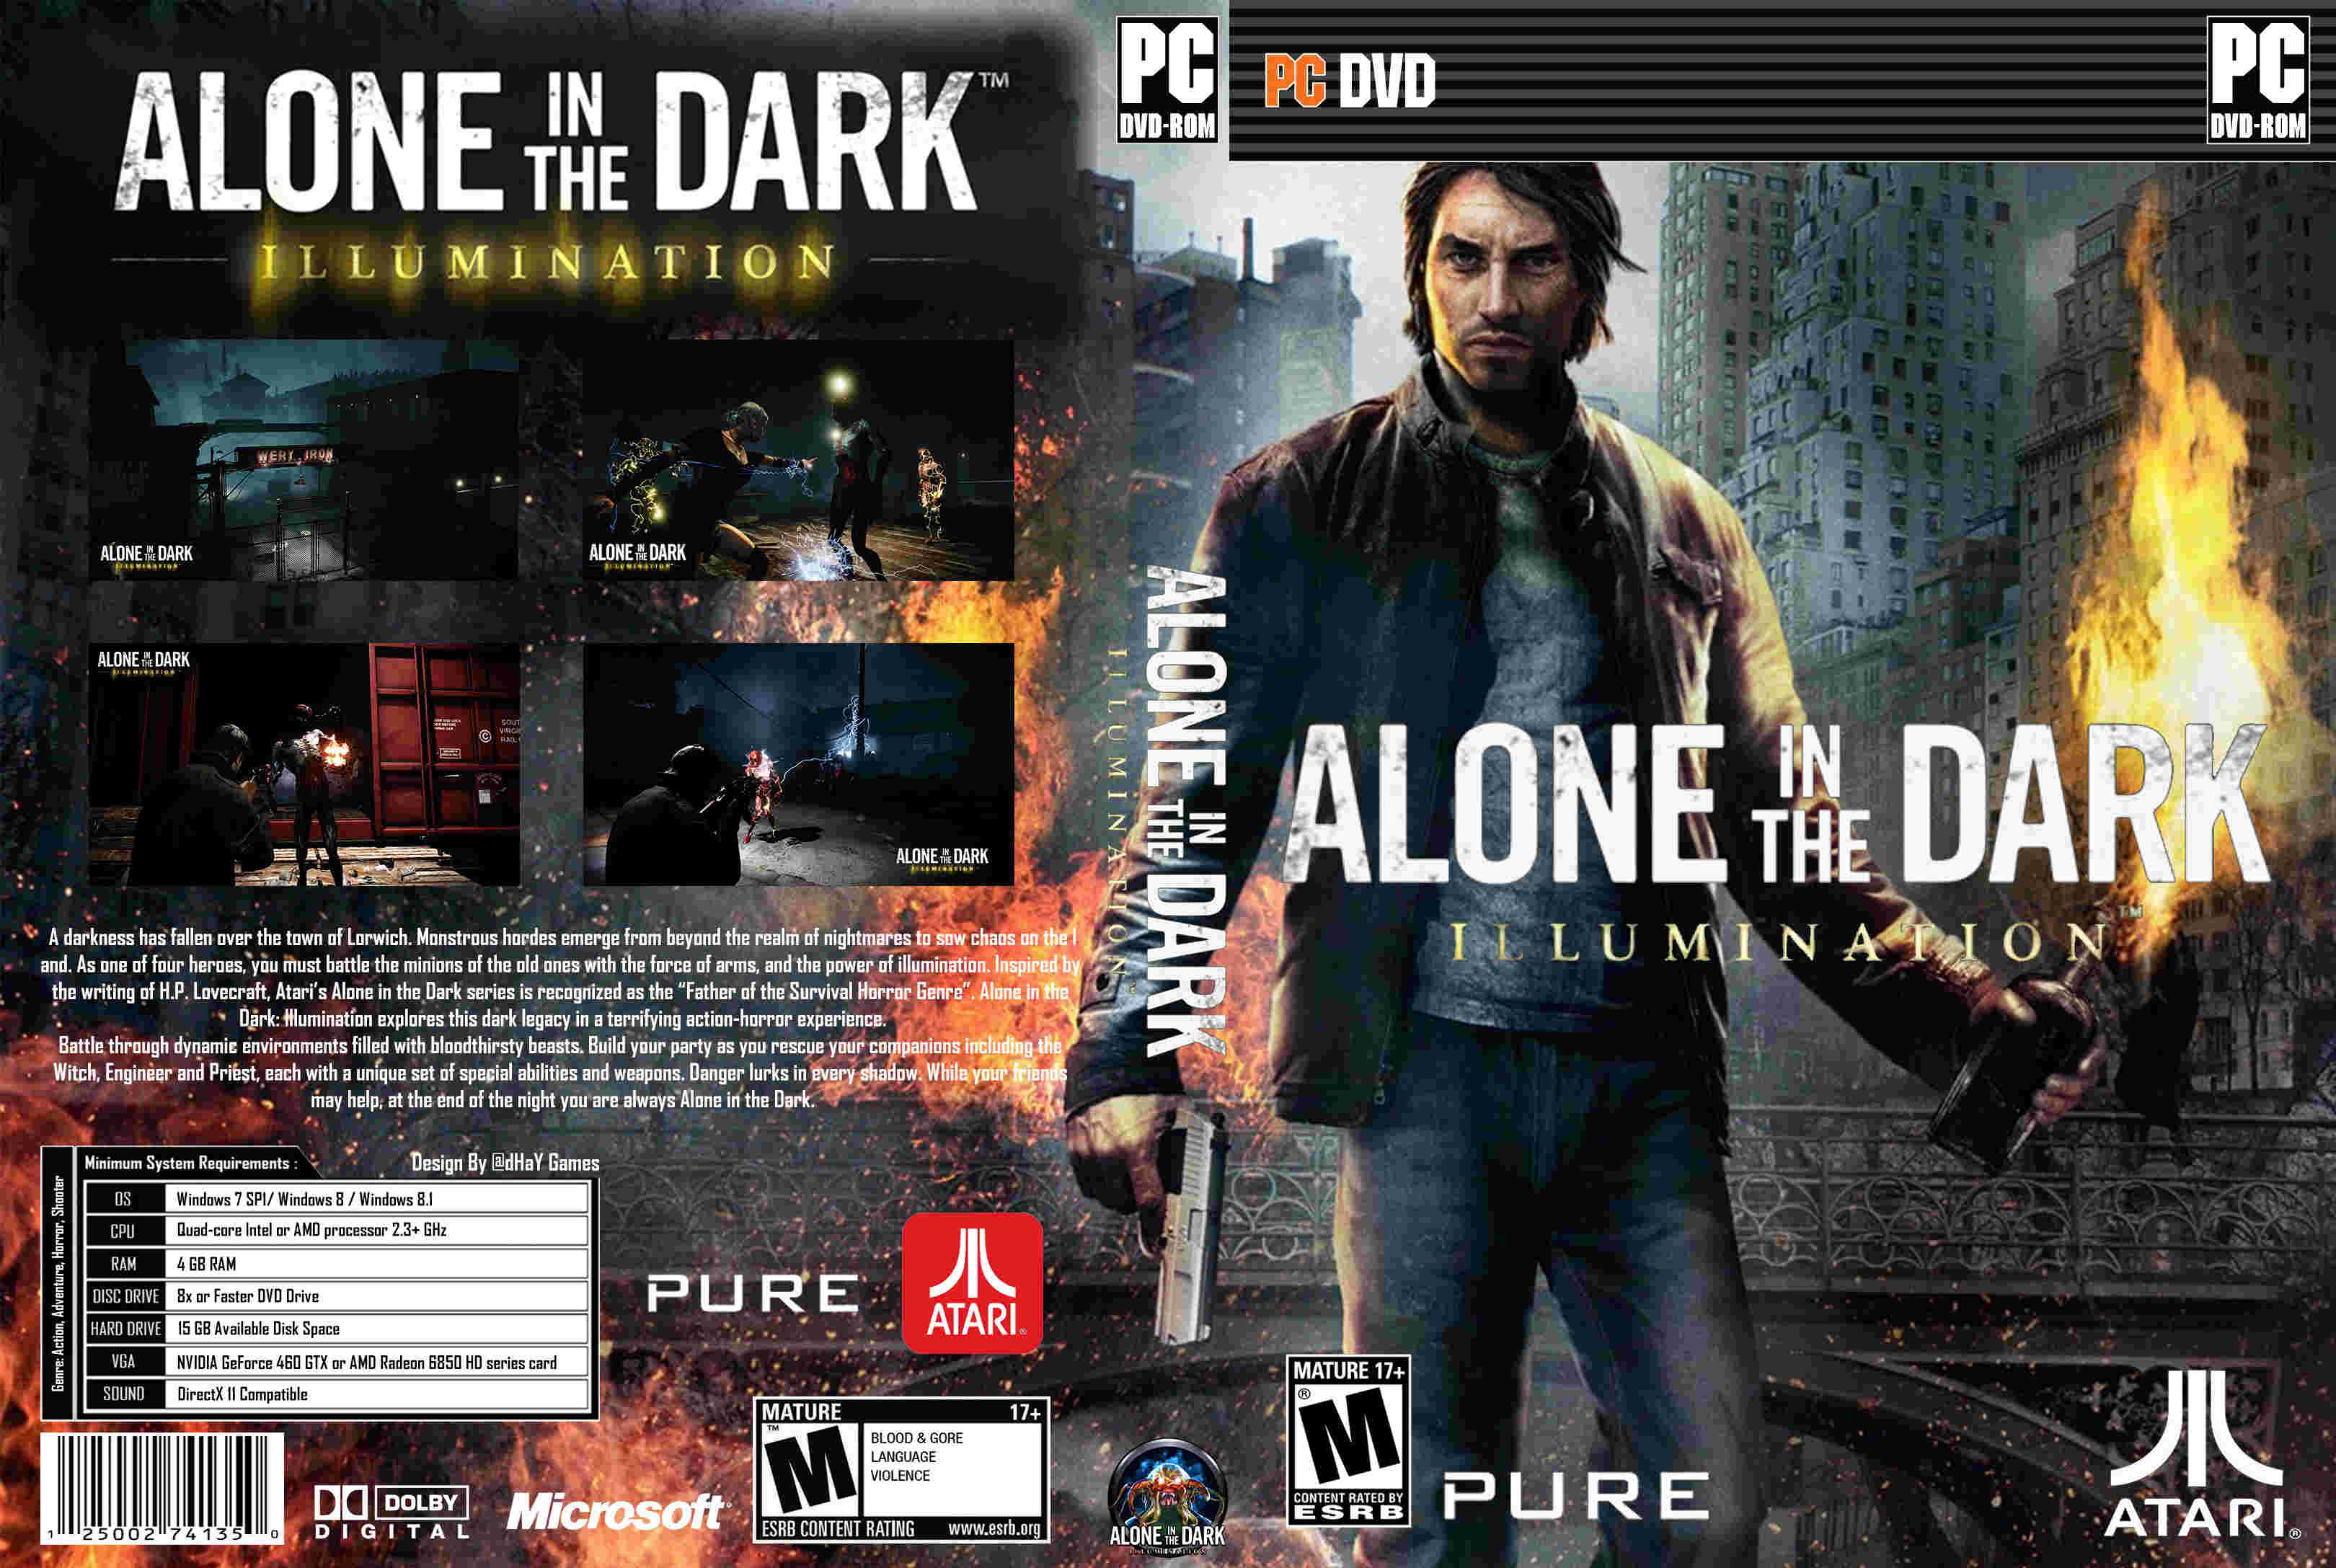 Alone in the dark 2024 талисман. Alone in the Dark: illumination. Alone in the Dark (2008) диск. Alone in the Dark игра 2015. Alone in the Dark: illumination (2015) диск.